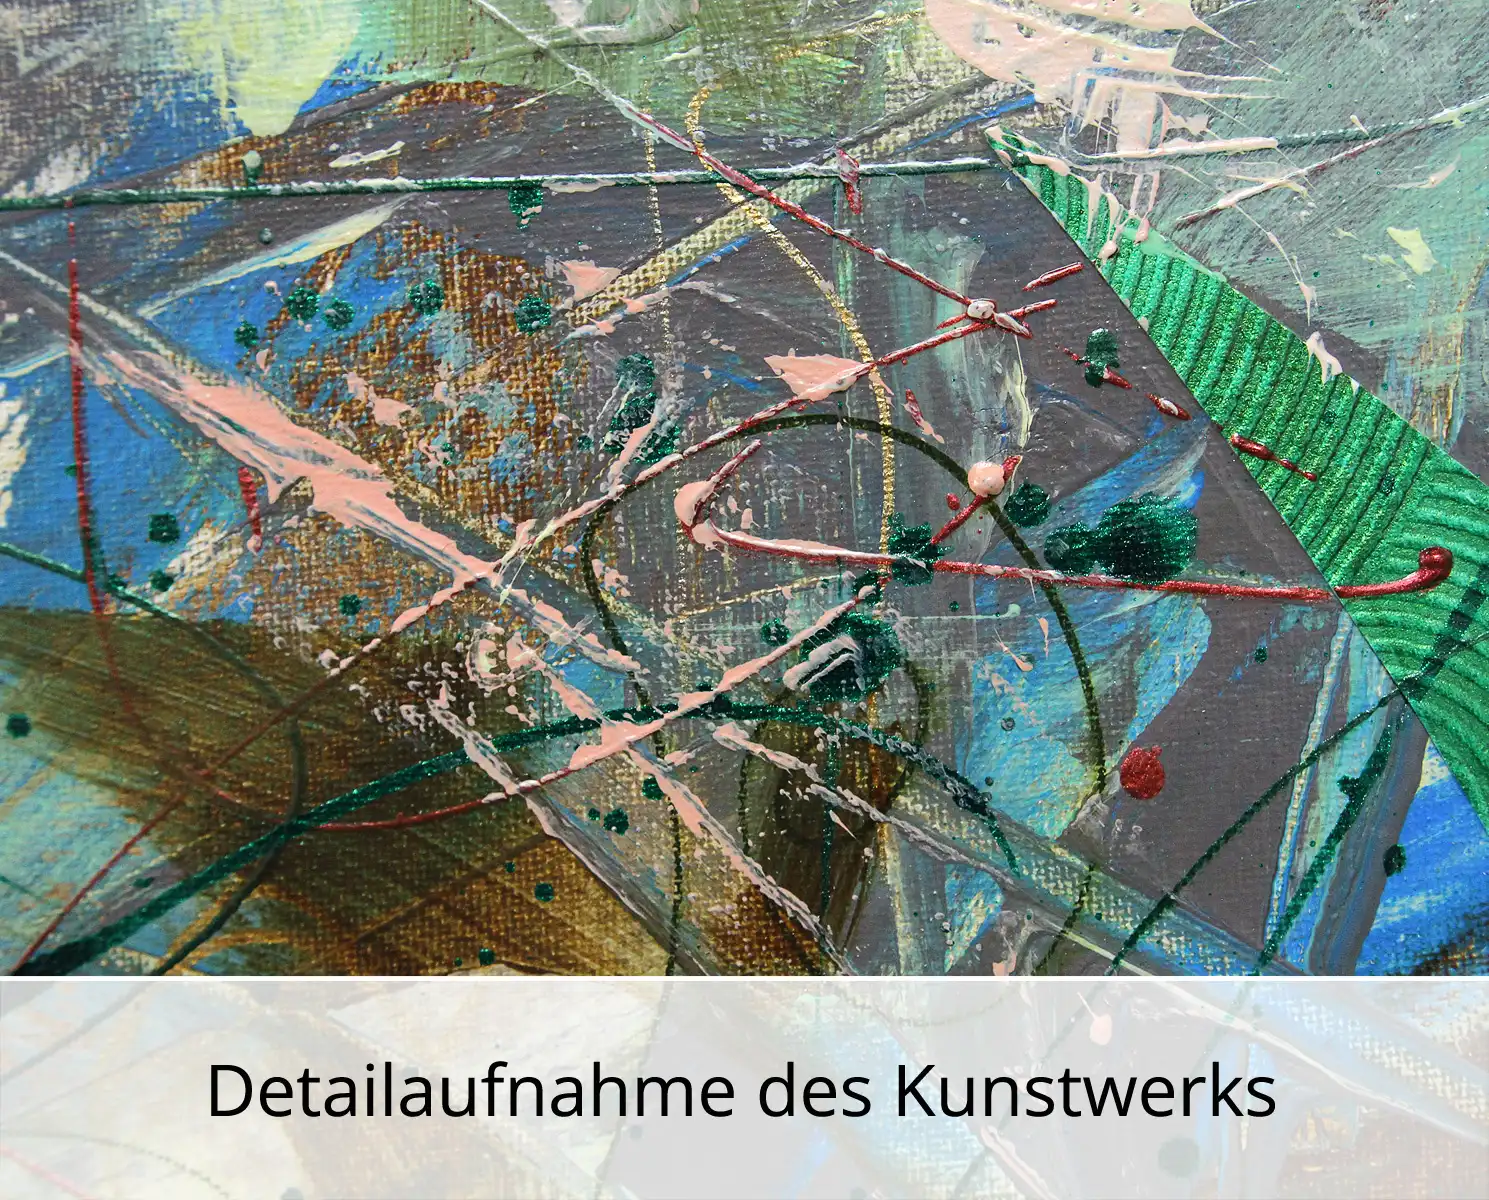 Abstrakte Malerei von Ewa Martens: "Geheimer Garten", Original/Unikat